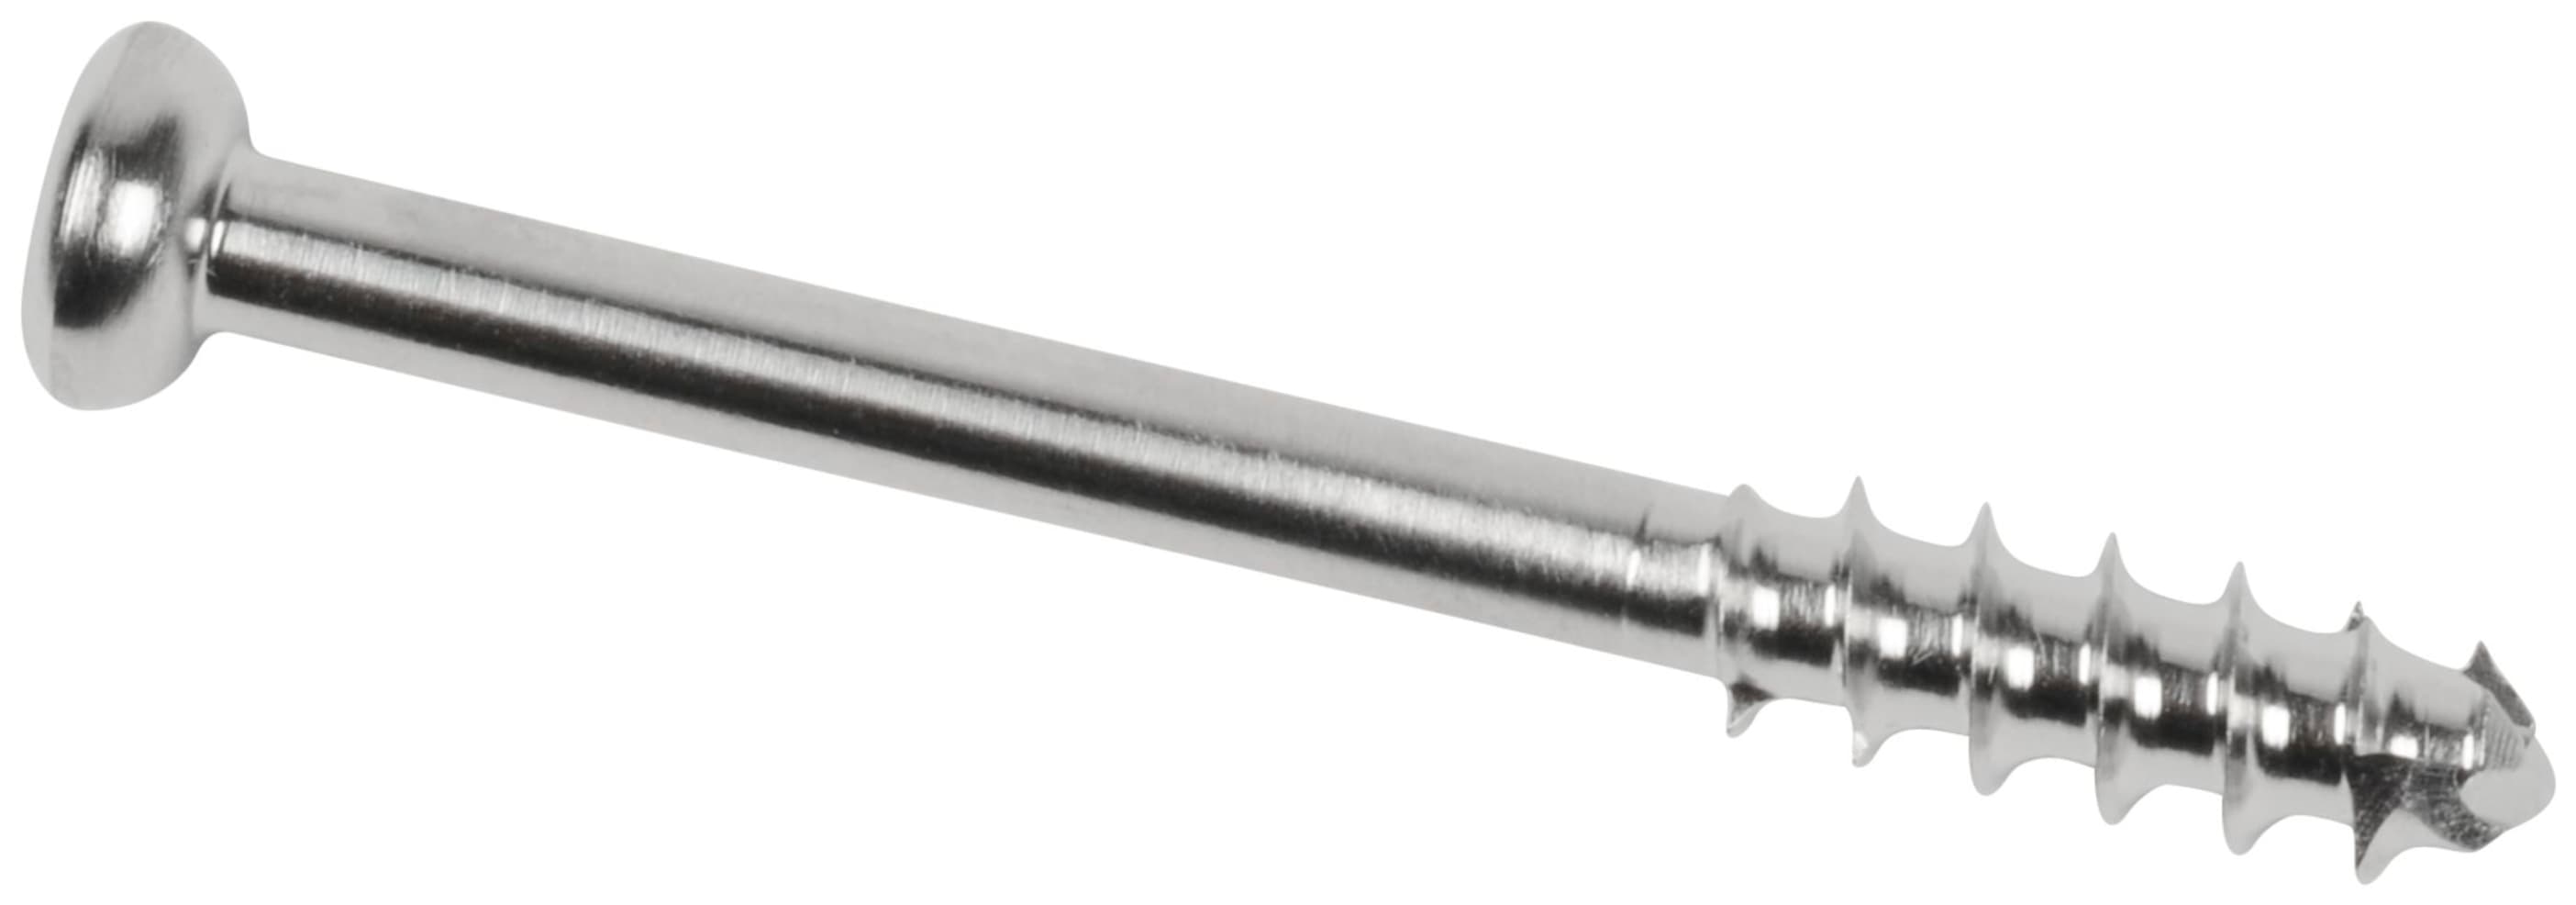 Low Profil Schraube, Stahl, kanüliert, kurzes Gewinde, 4.0 x 35 mm, unsteril, IM